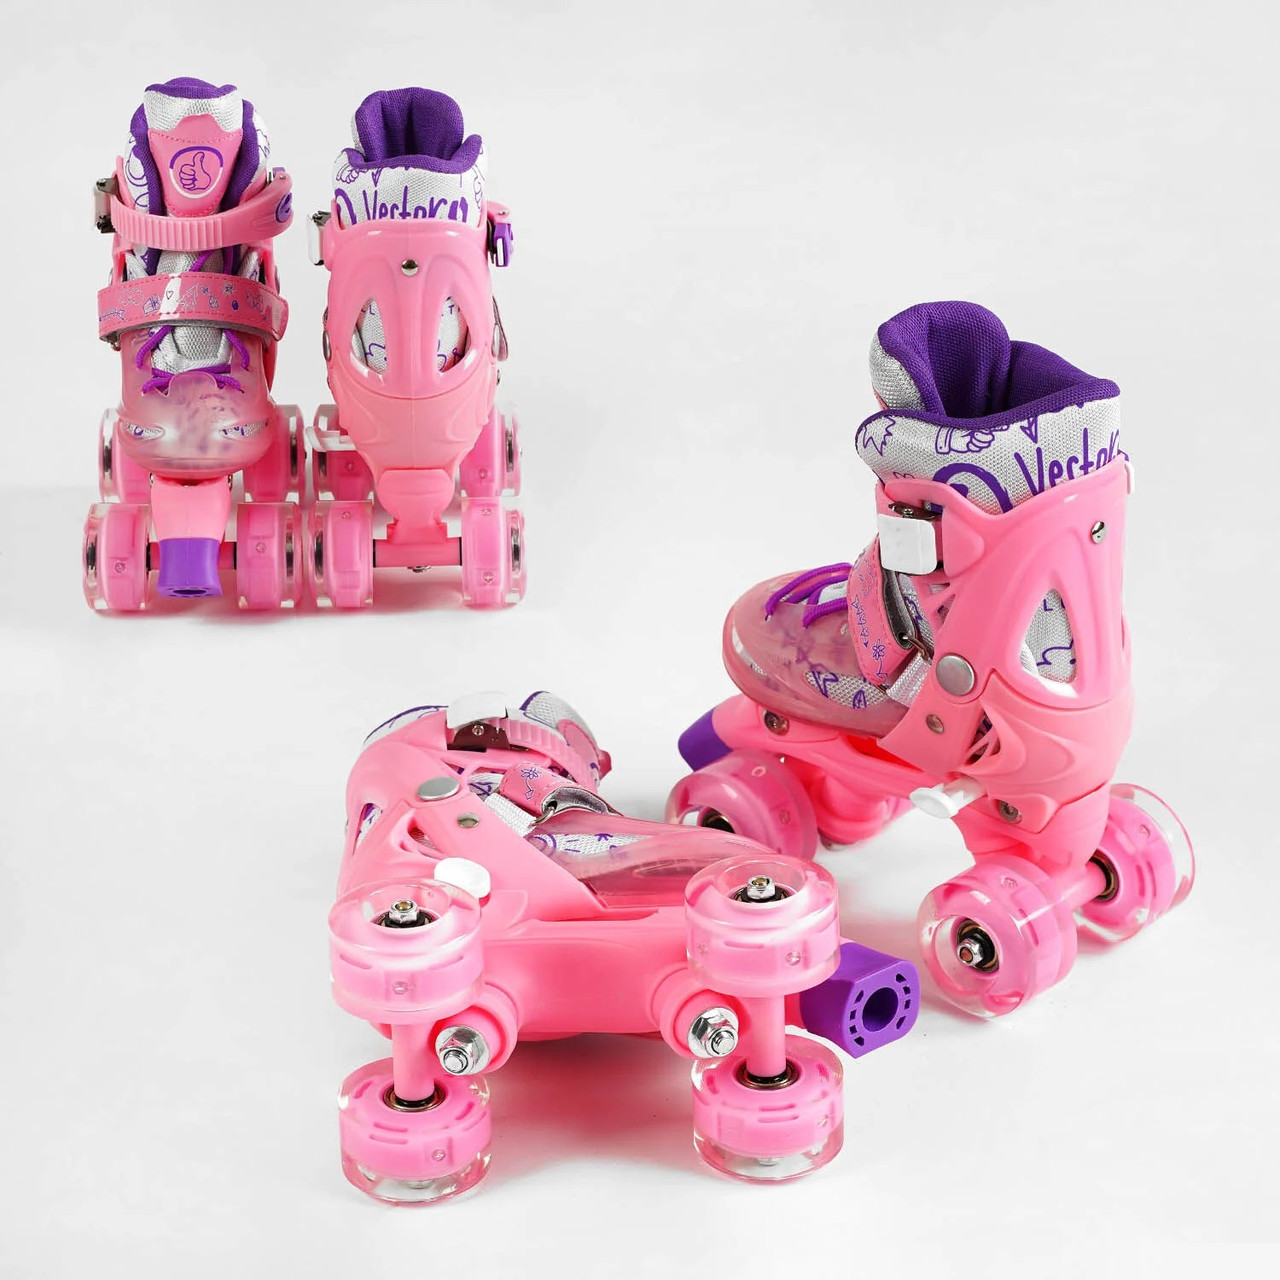 Ролики чотириколісні дитячі 12188-XS розмір 27-30 Рожеві, колеса PU безшумні, ролики квади для початківців